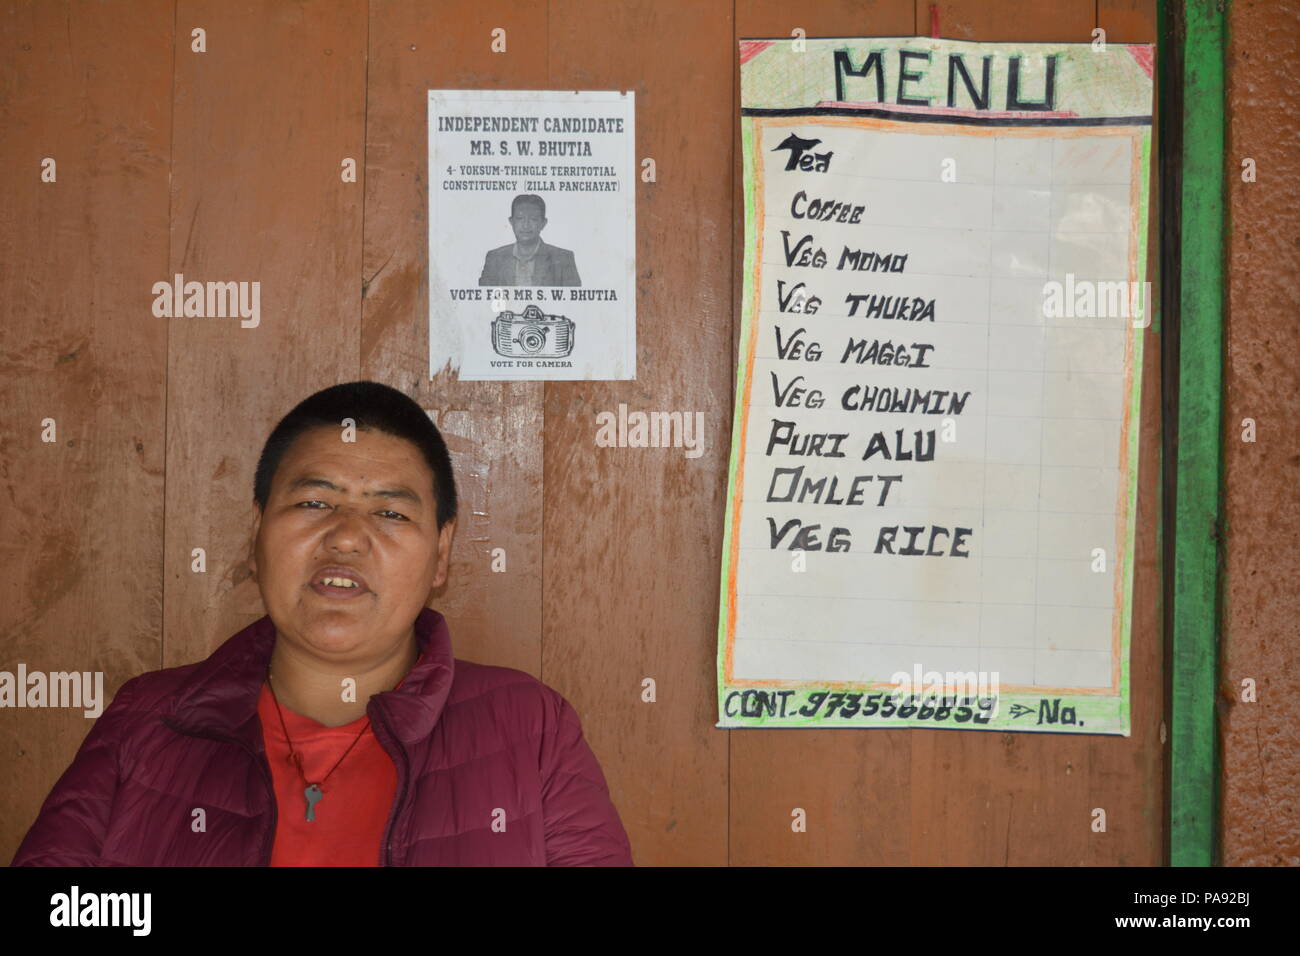 Pelling, West Sikkim, India. Travel photo. Stock Photo